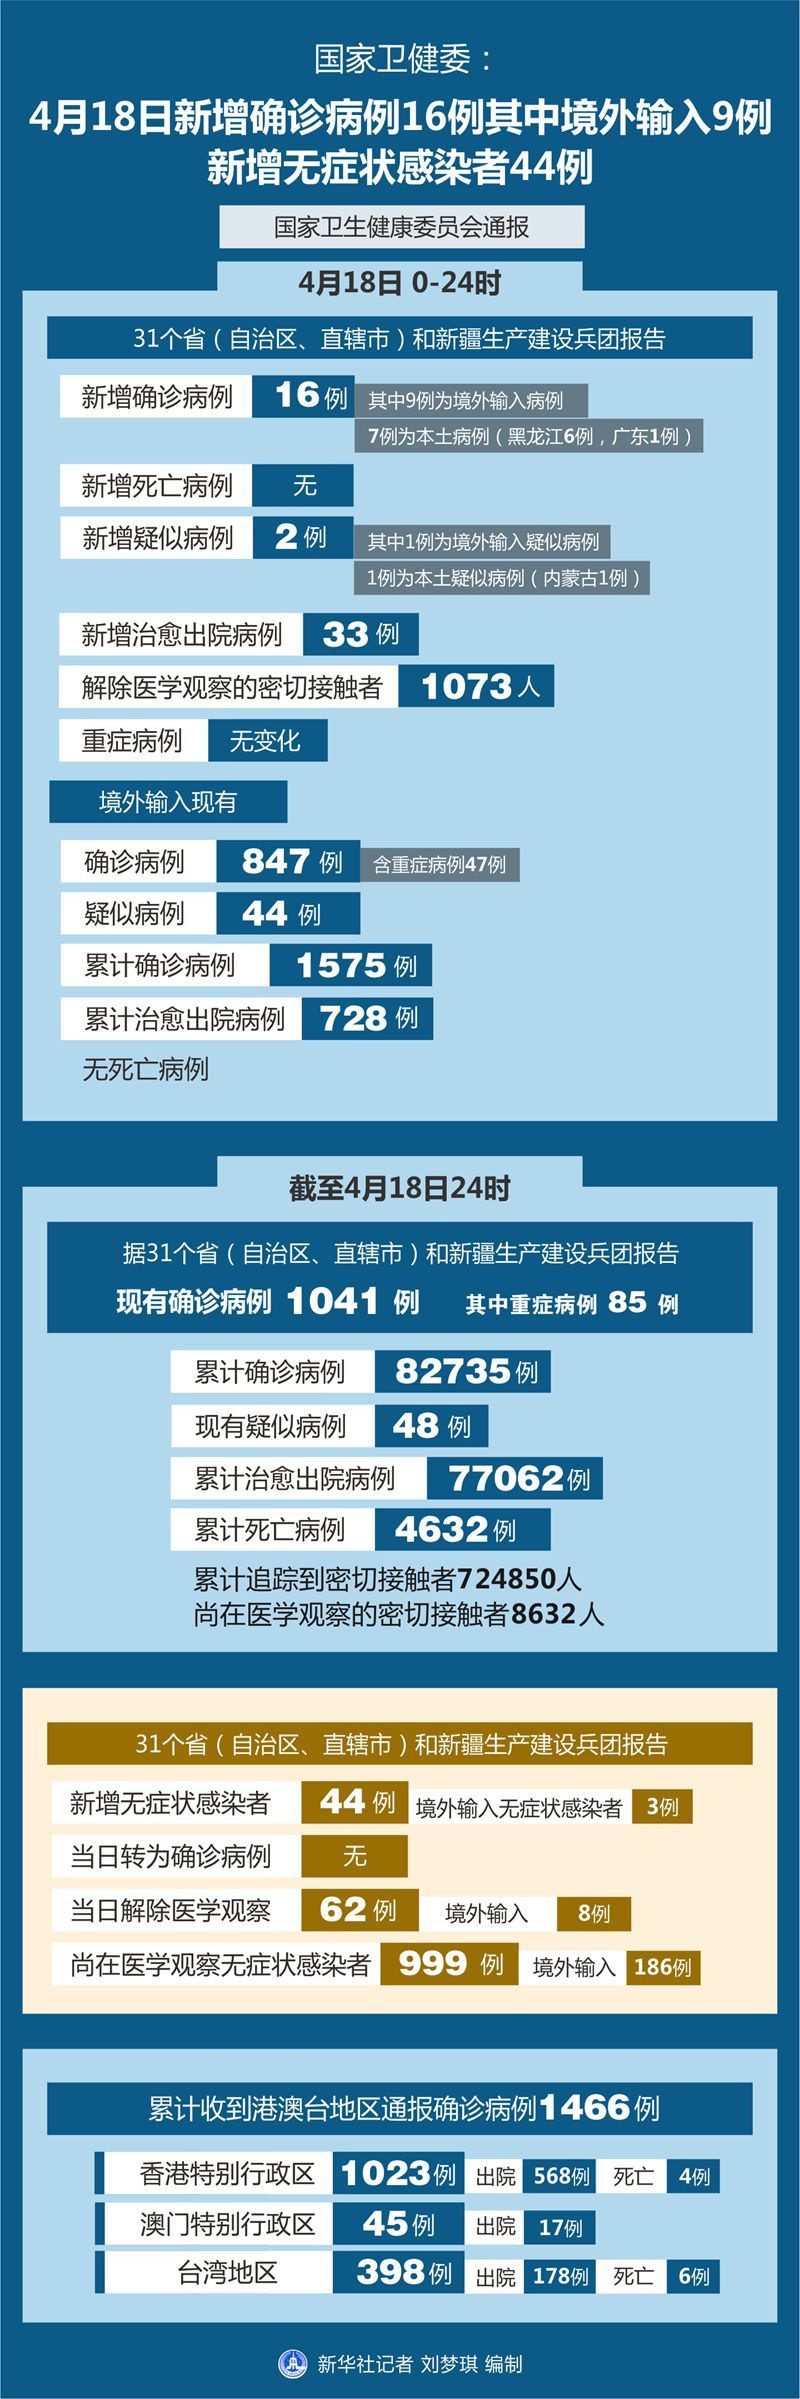 1月28日31省份新增本土确诊37例 北京5例